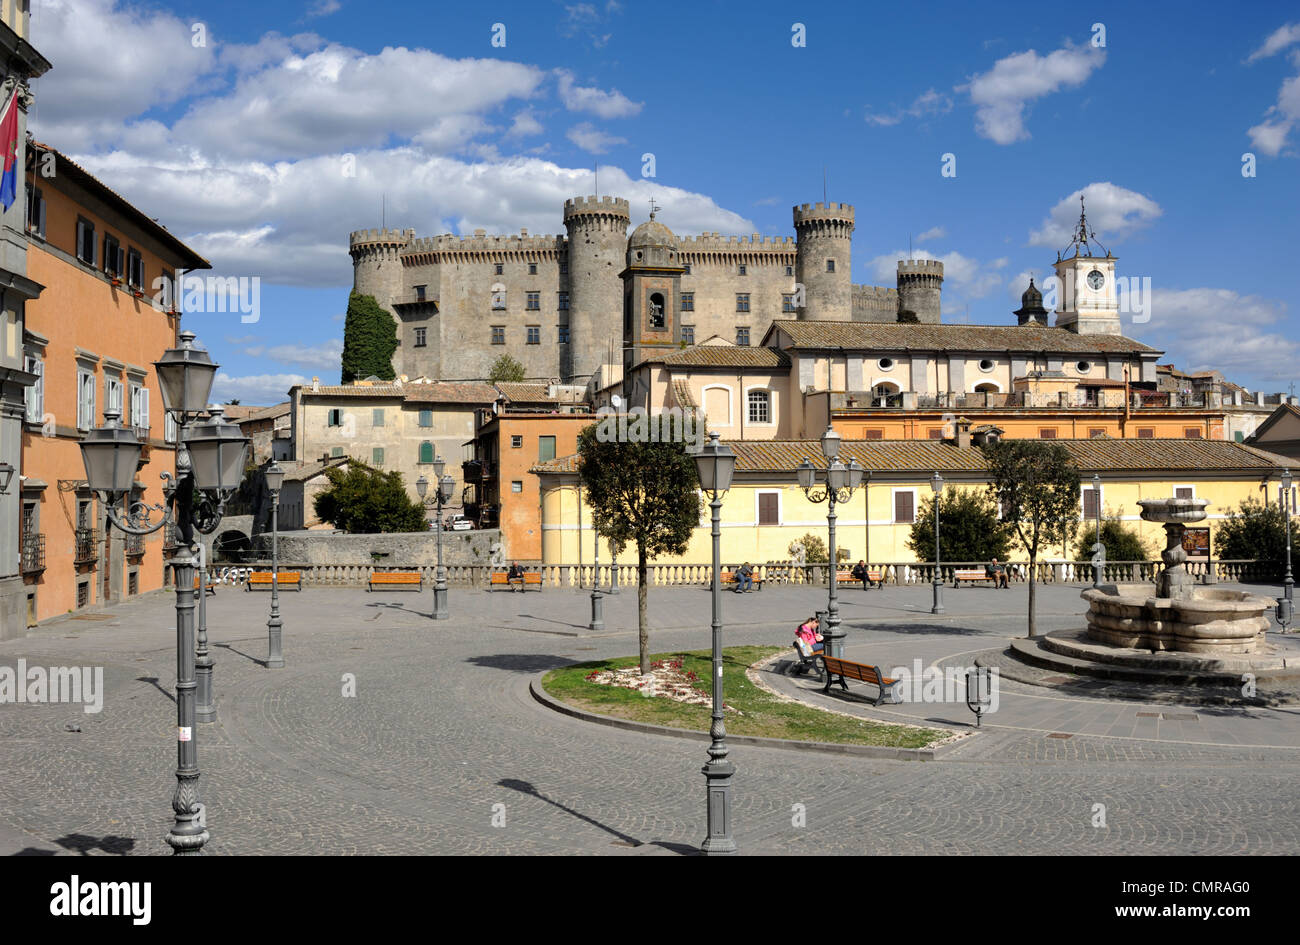 Italy, Lazio, Bracciano, Piazza IV Novembre, Castello Orsini Odescalchi castle Stock Photo